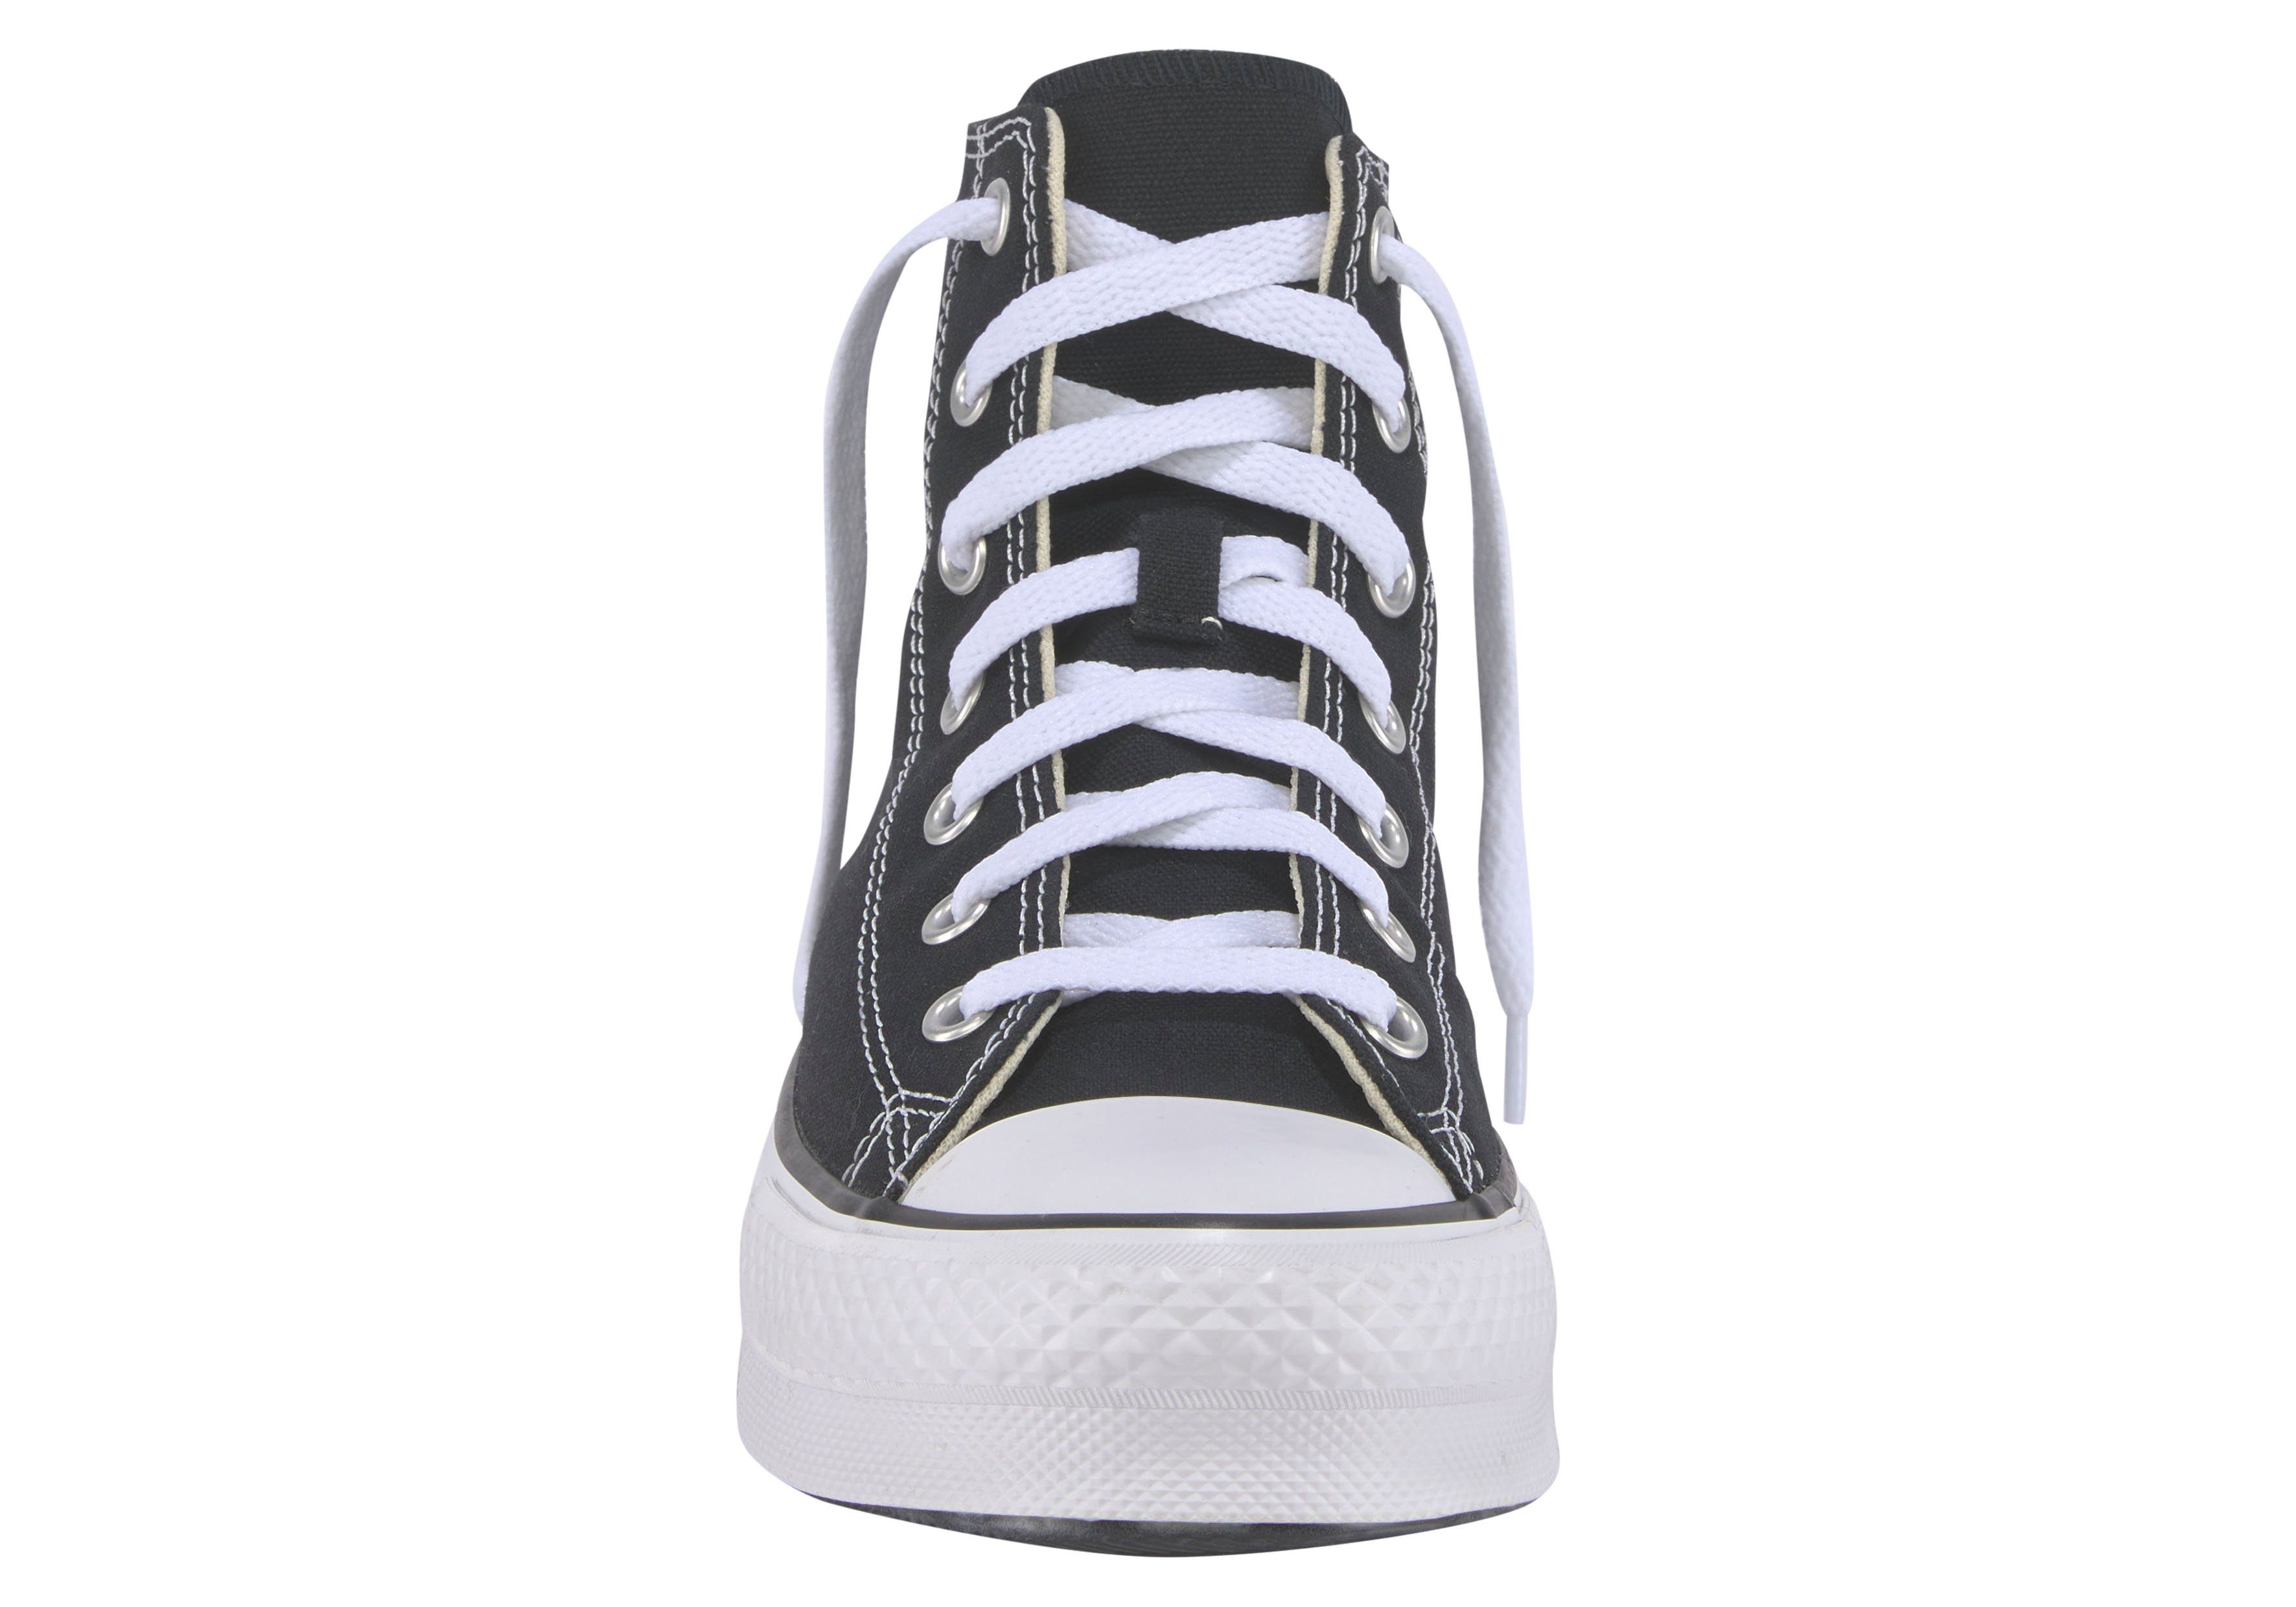 ALL schwarz-weiß EVA STAR CANV Sneaker LIFT Converse CHUCK TAYLOR